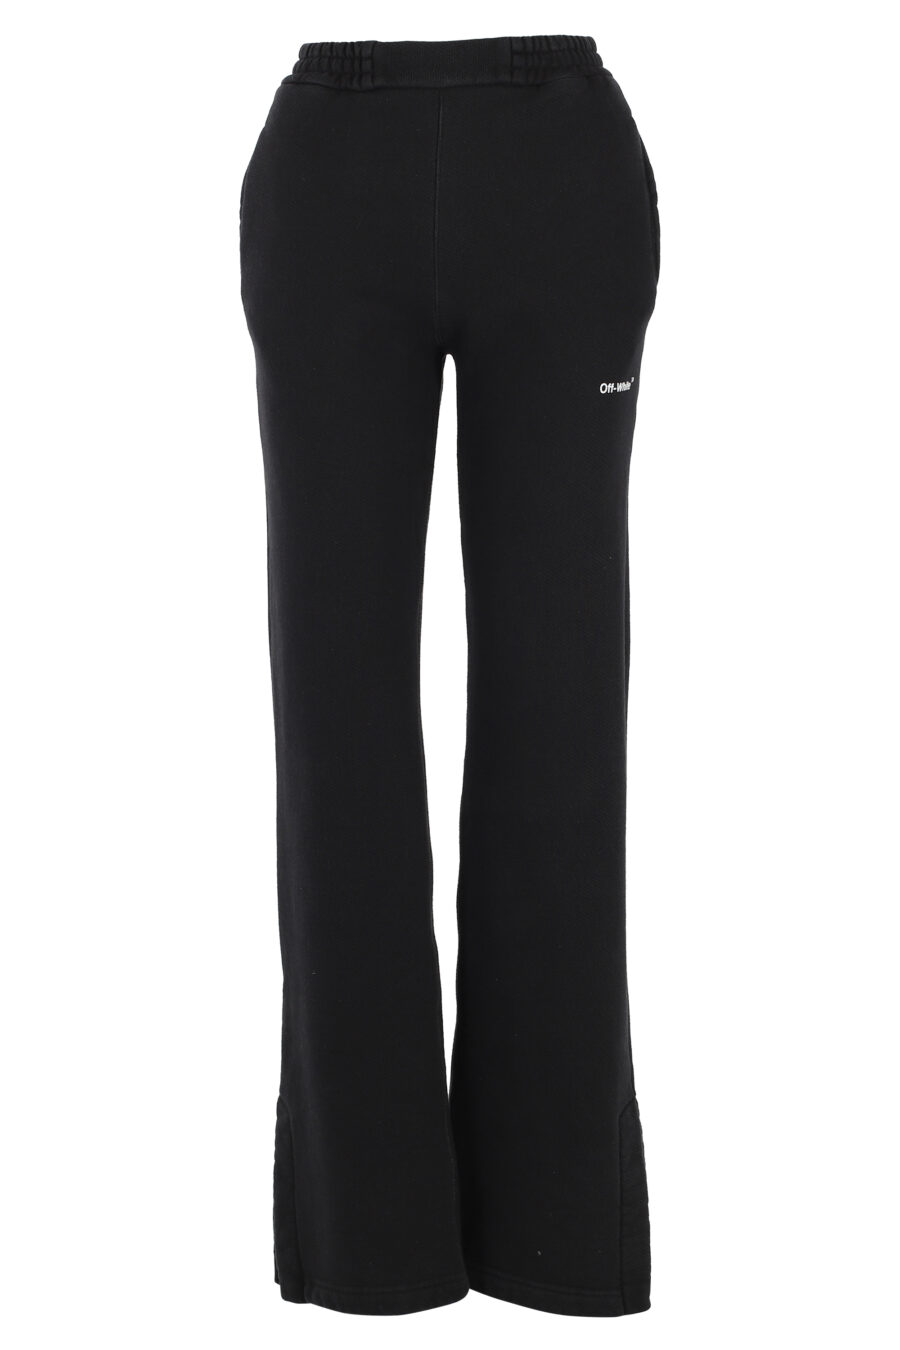 Pantalon de chandal negro con logo blanco "Diag" - IMG 5056